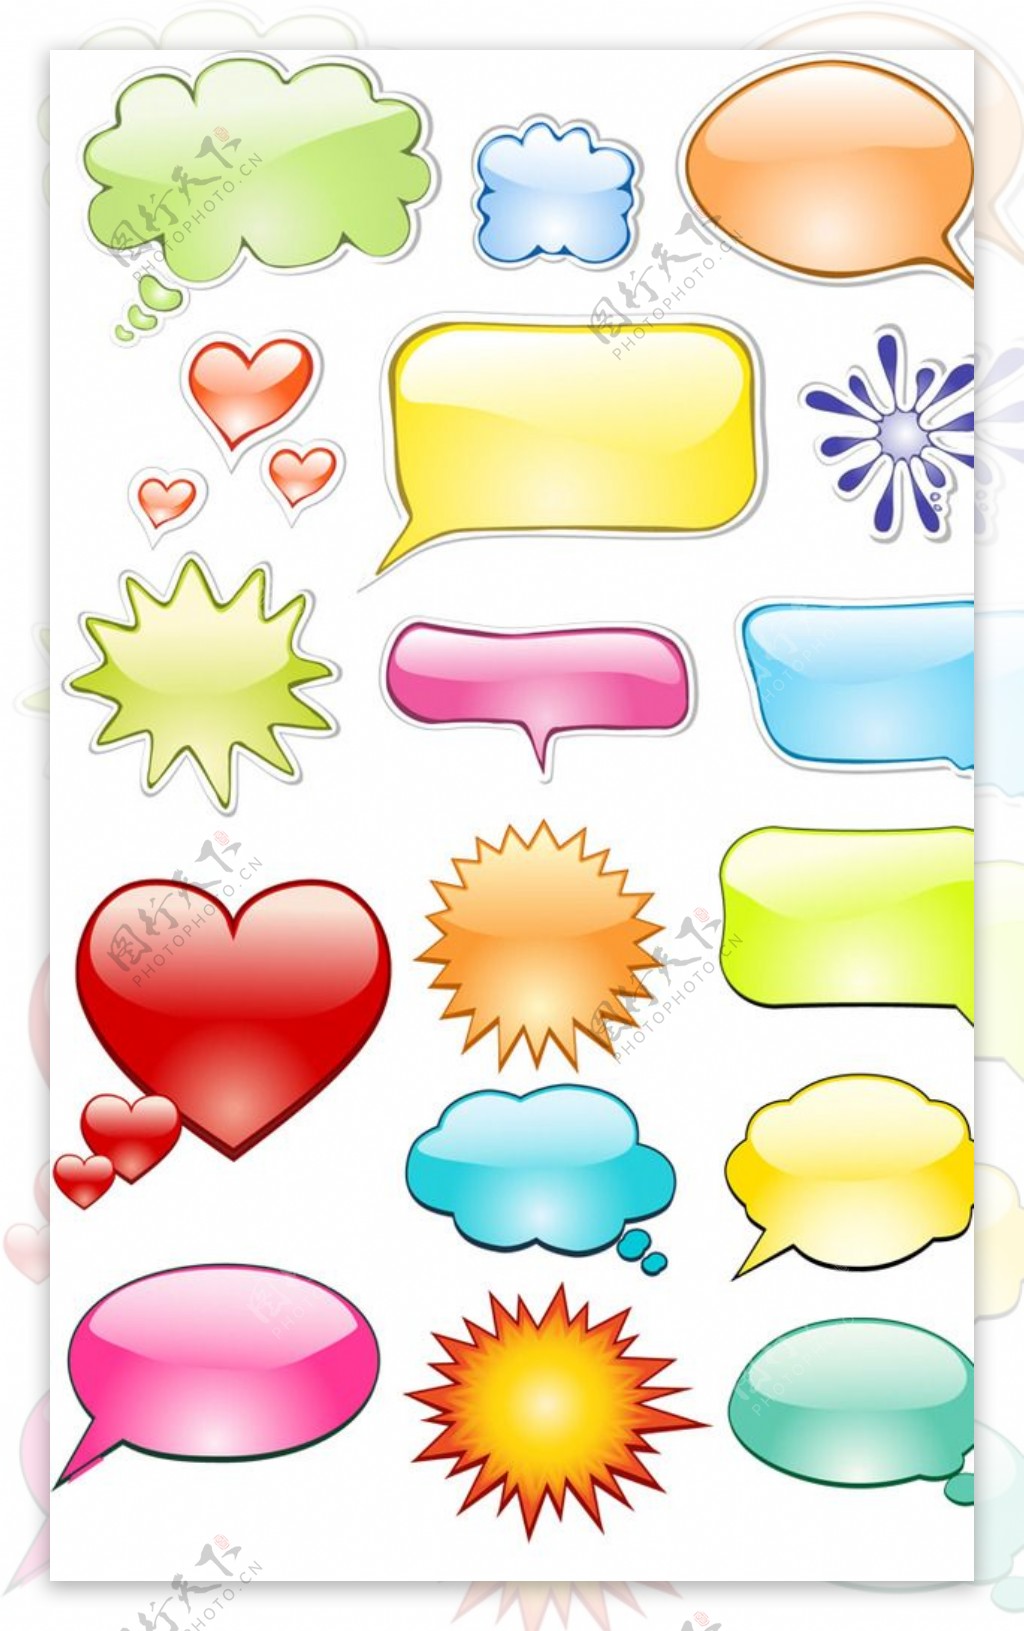 创意彩色对话框设计矢量素材